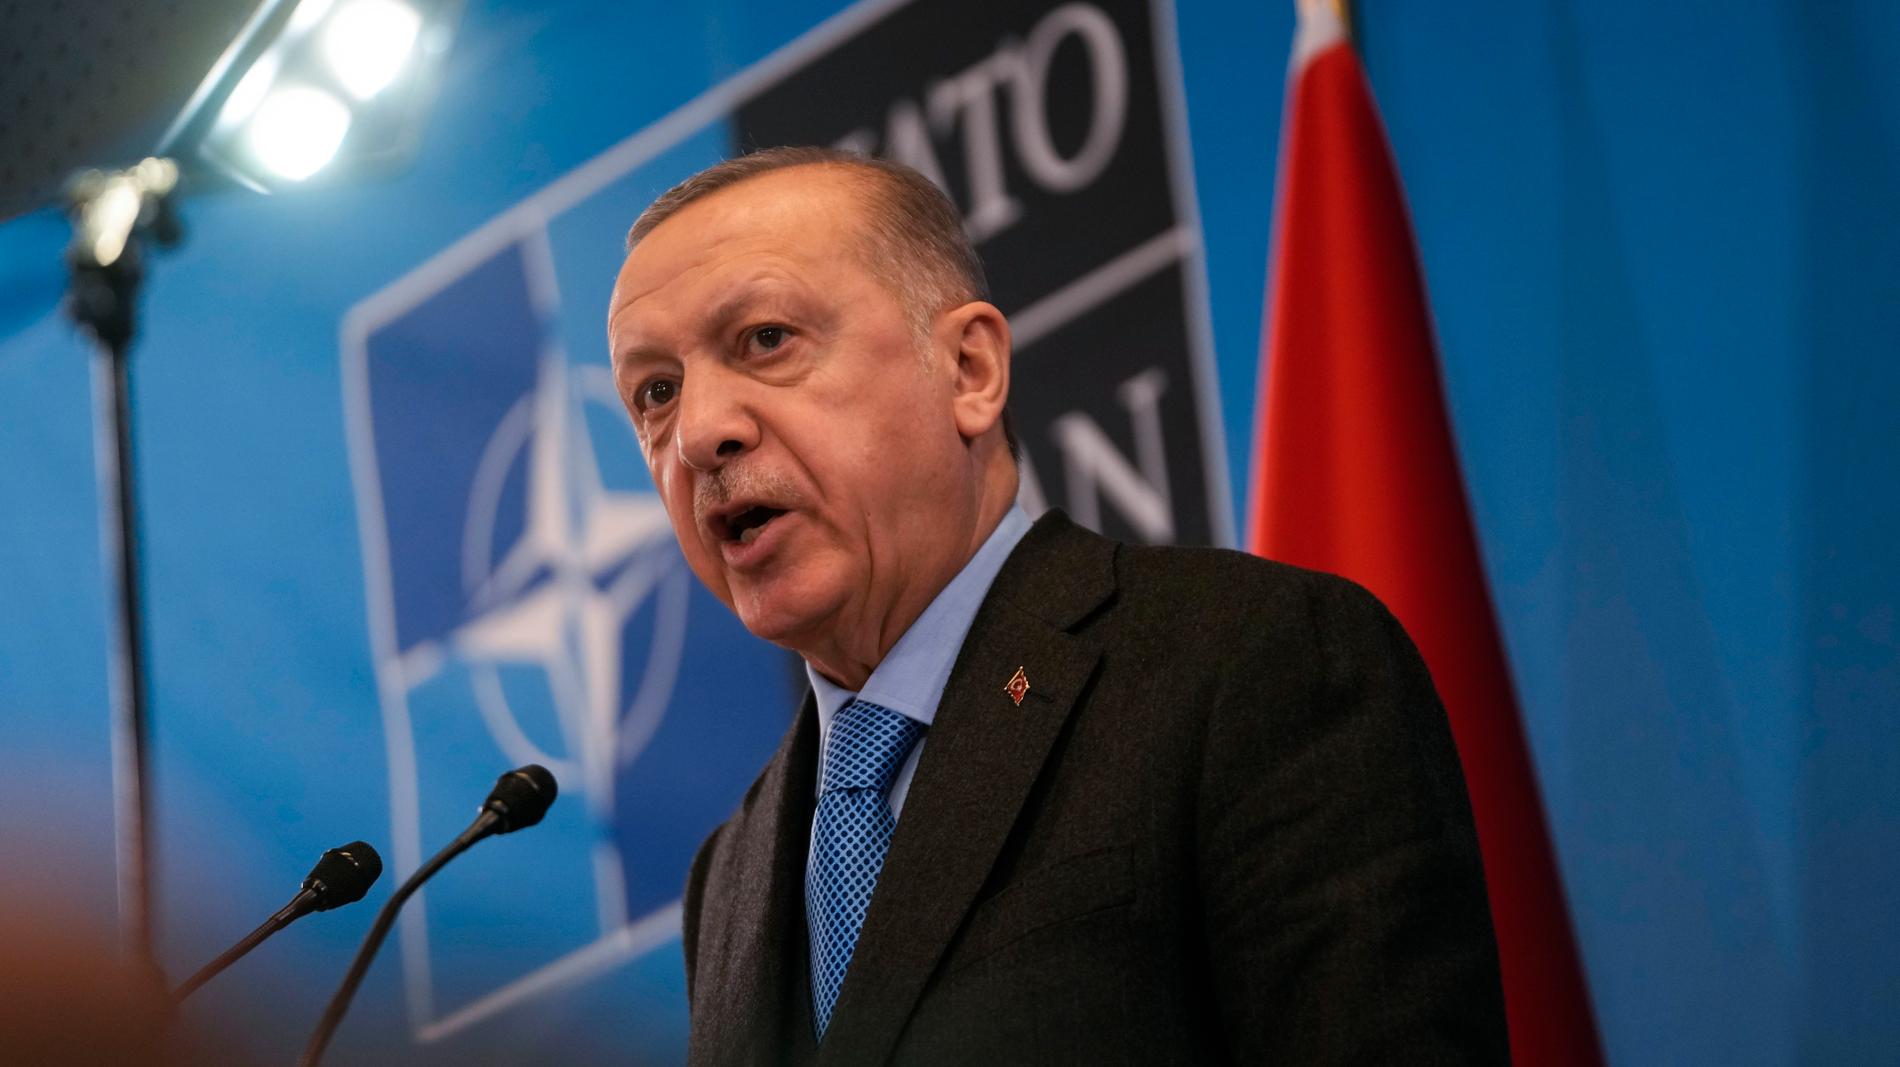 Turkiets president Recep Tayyip Erdogan vill inte ha Sverige i Nato: ”Sverige har blivit ett hem för PKK och andra terrorgrupper. Vi ser inte positivt på deras medlemskap”, sa han då. 